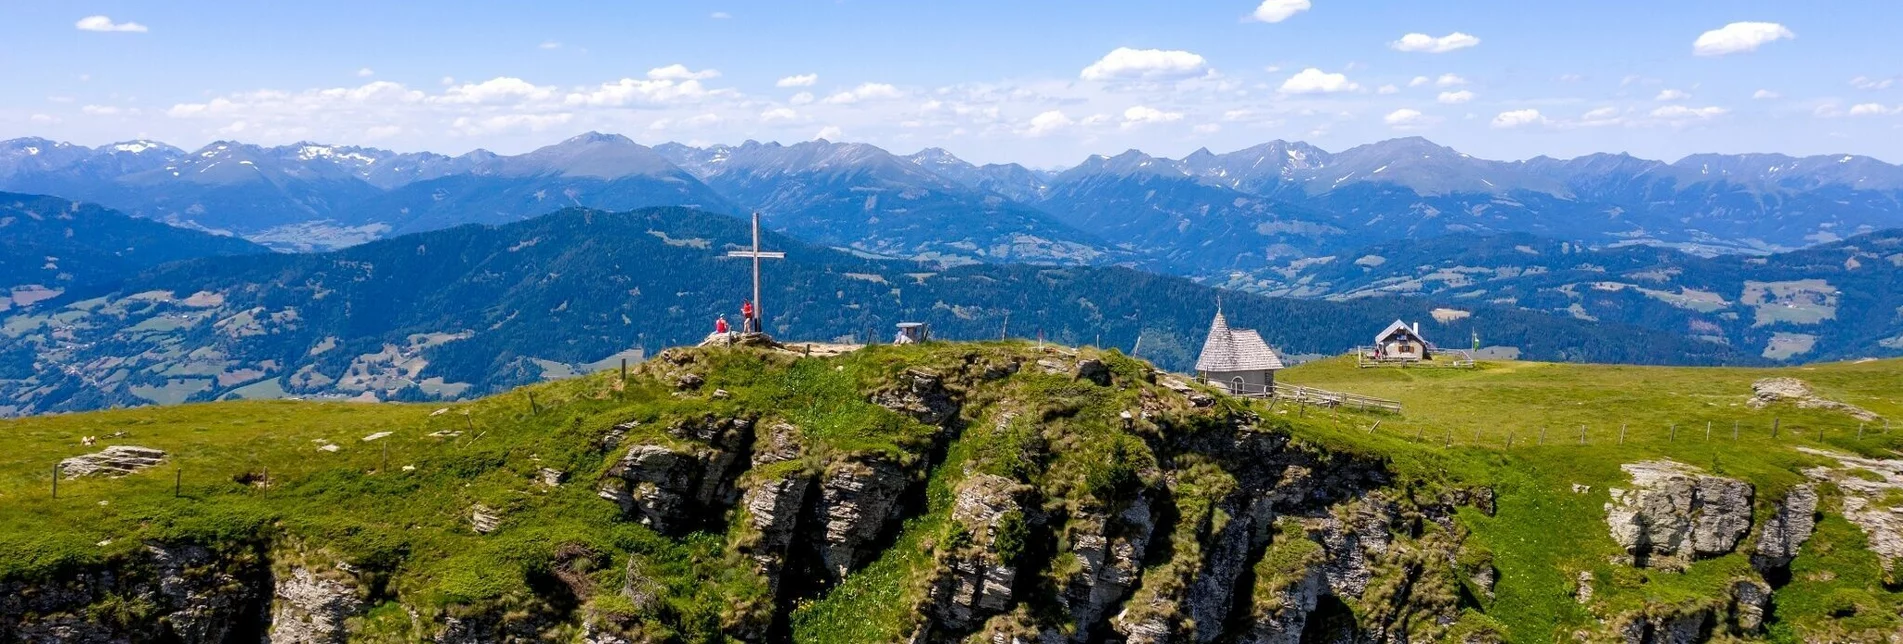 Wanderung 8-Gipfel-Wanderung: Vom Kreischberg zur Frauenalpe - Touren-Impression #1 | © Tourismusverband Murau